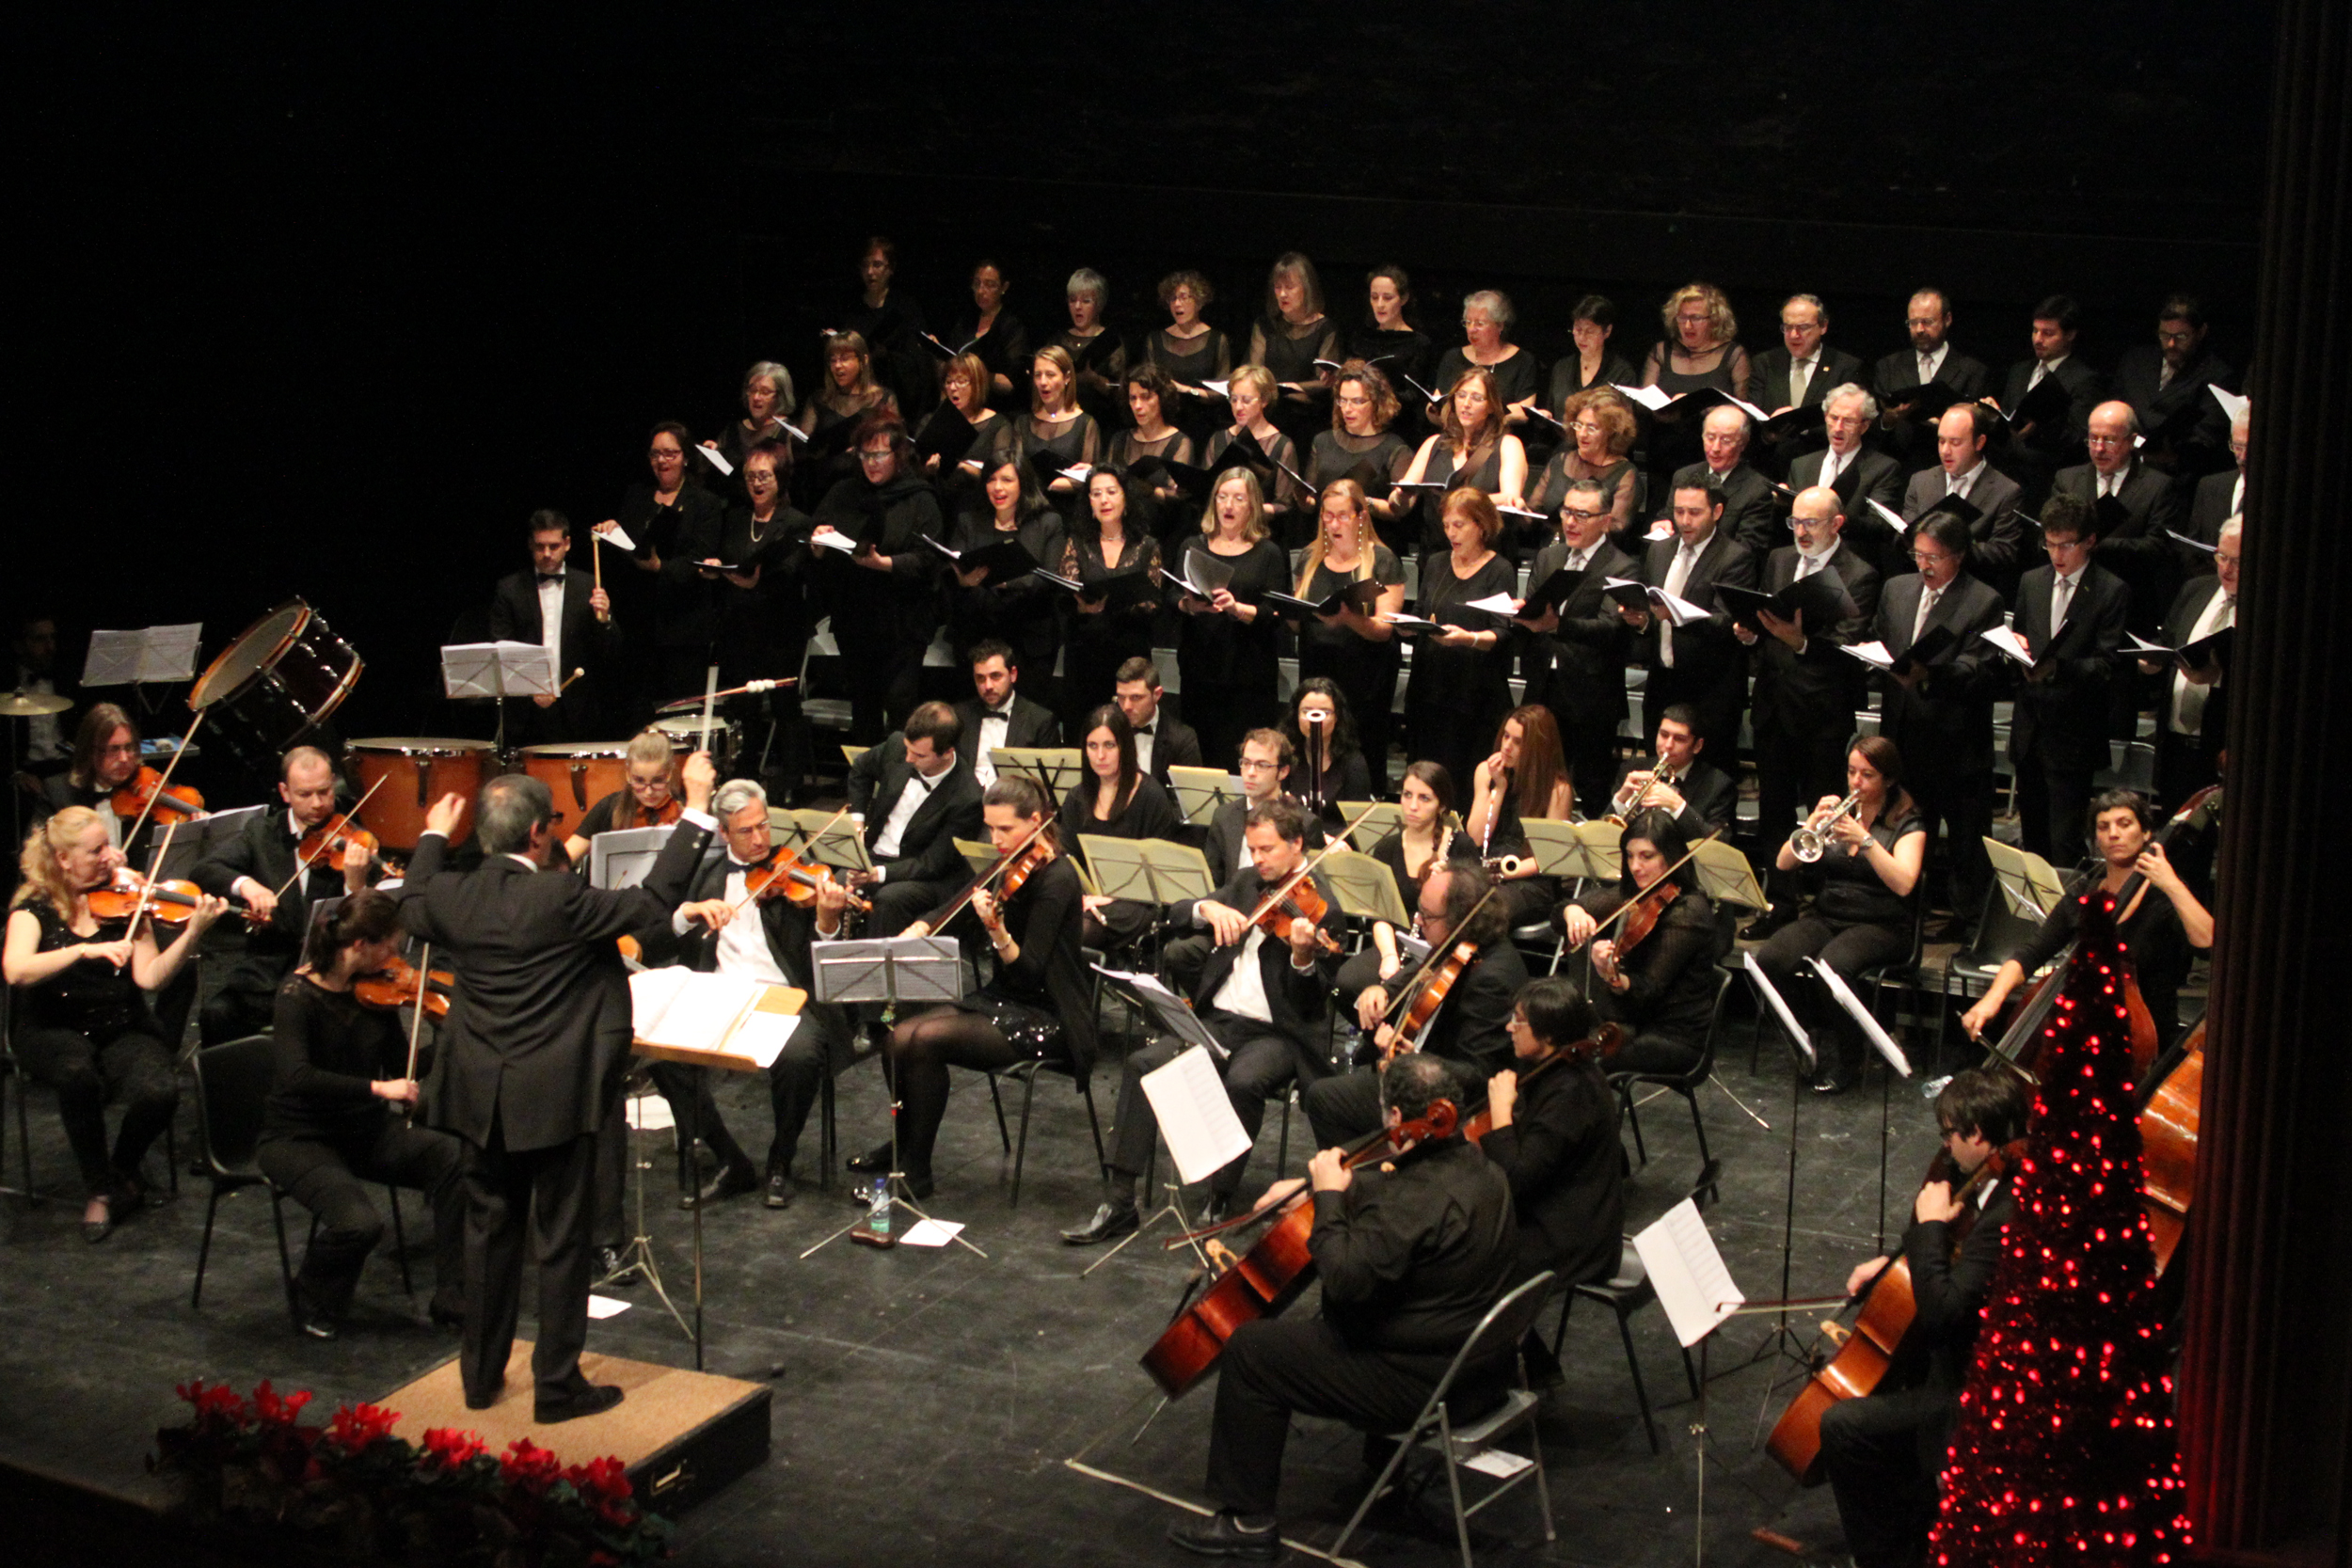 Tàrrega clou aquest diumenge 15 de gener el cicle cultural de festes amb un Concert de Reis dedicat a l’òpera, la sarsuela i el musical